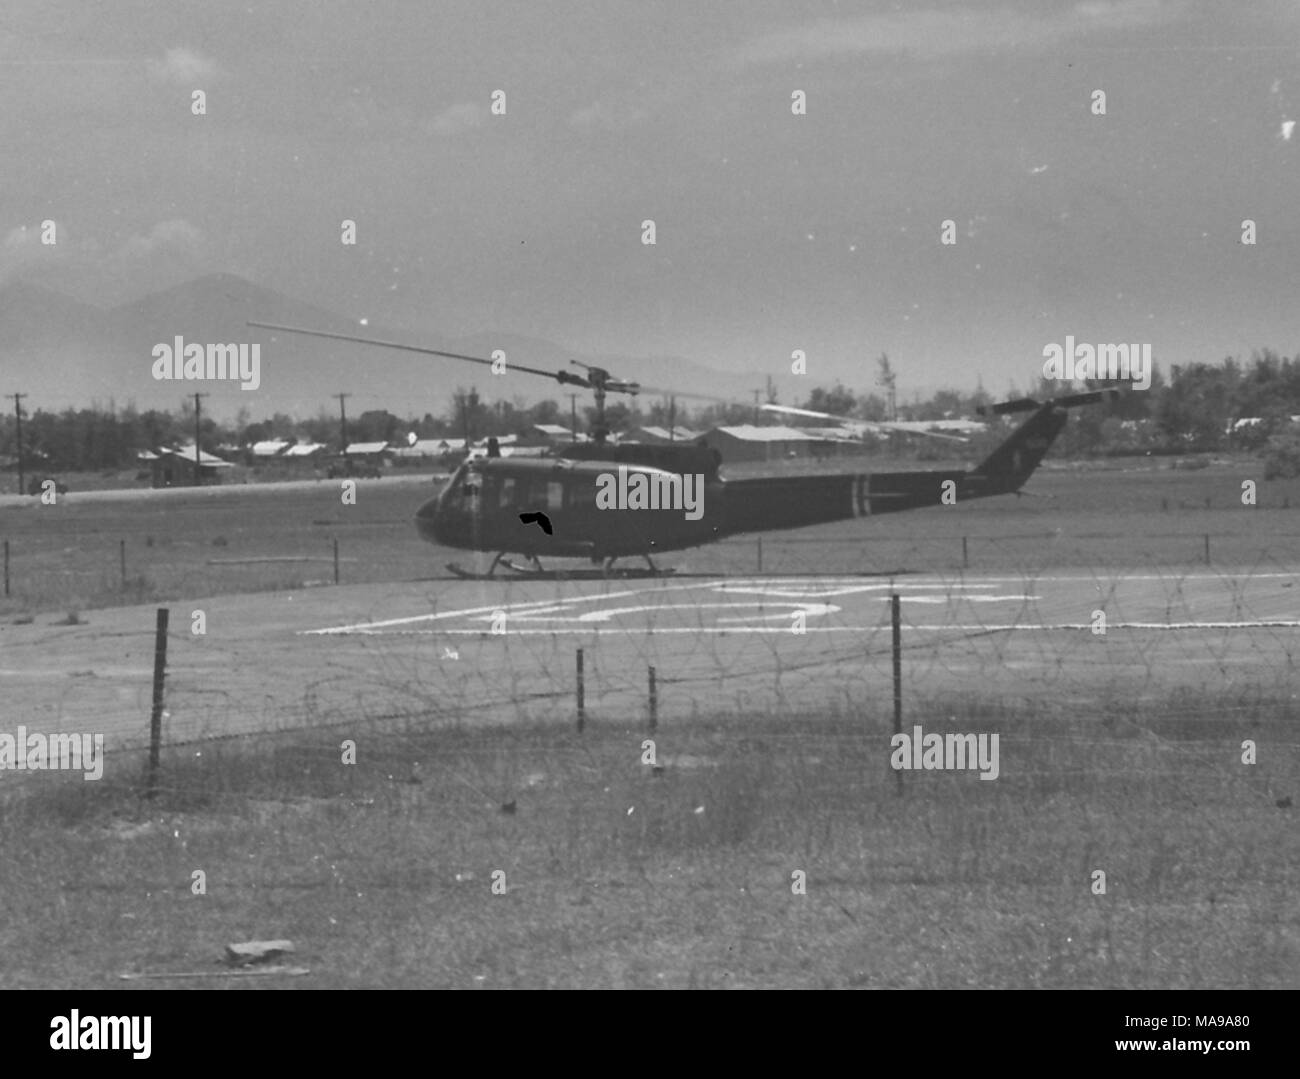 Schwarz-weiß Foto mit einem Hubschrauber auf einer Landebahn angedockt, mit Bäumen und Gebäuden, wahrscheinlich ein US Marine Corps Militärlager, in den Hintergrund, die in Vietnam während des Vietnam Krieges fotografiert (1955-1975), 1968. () Stockfoto